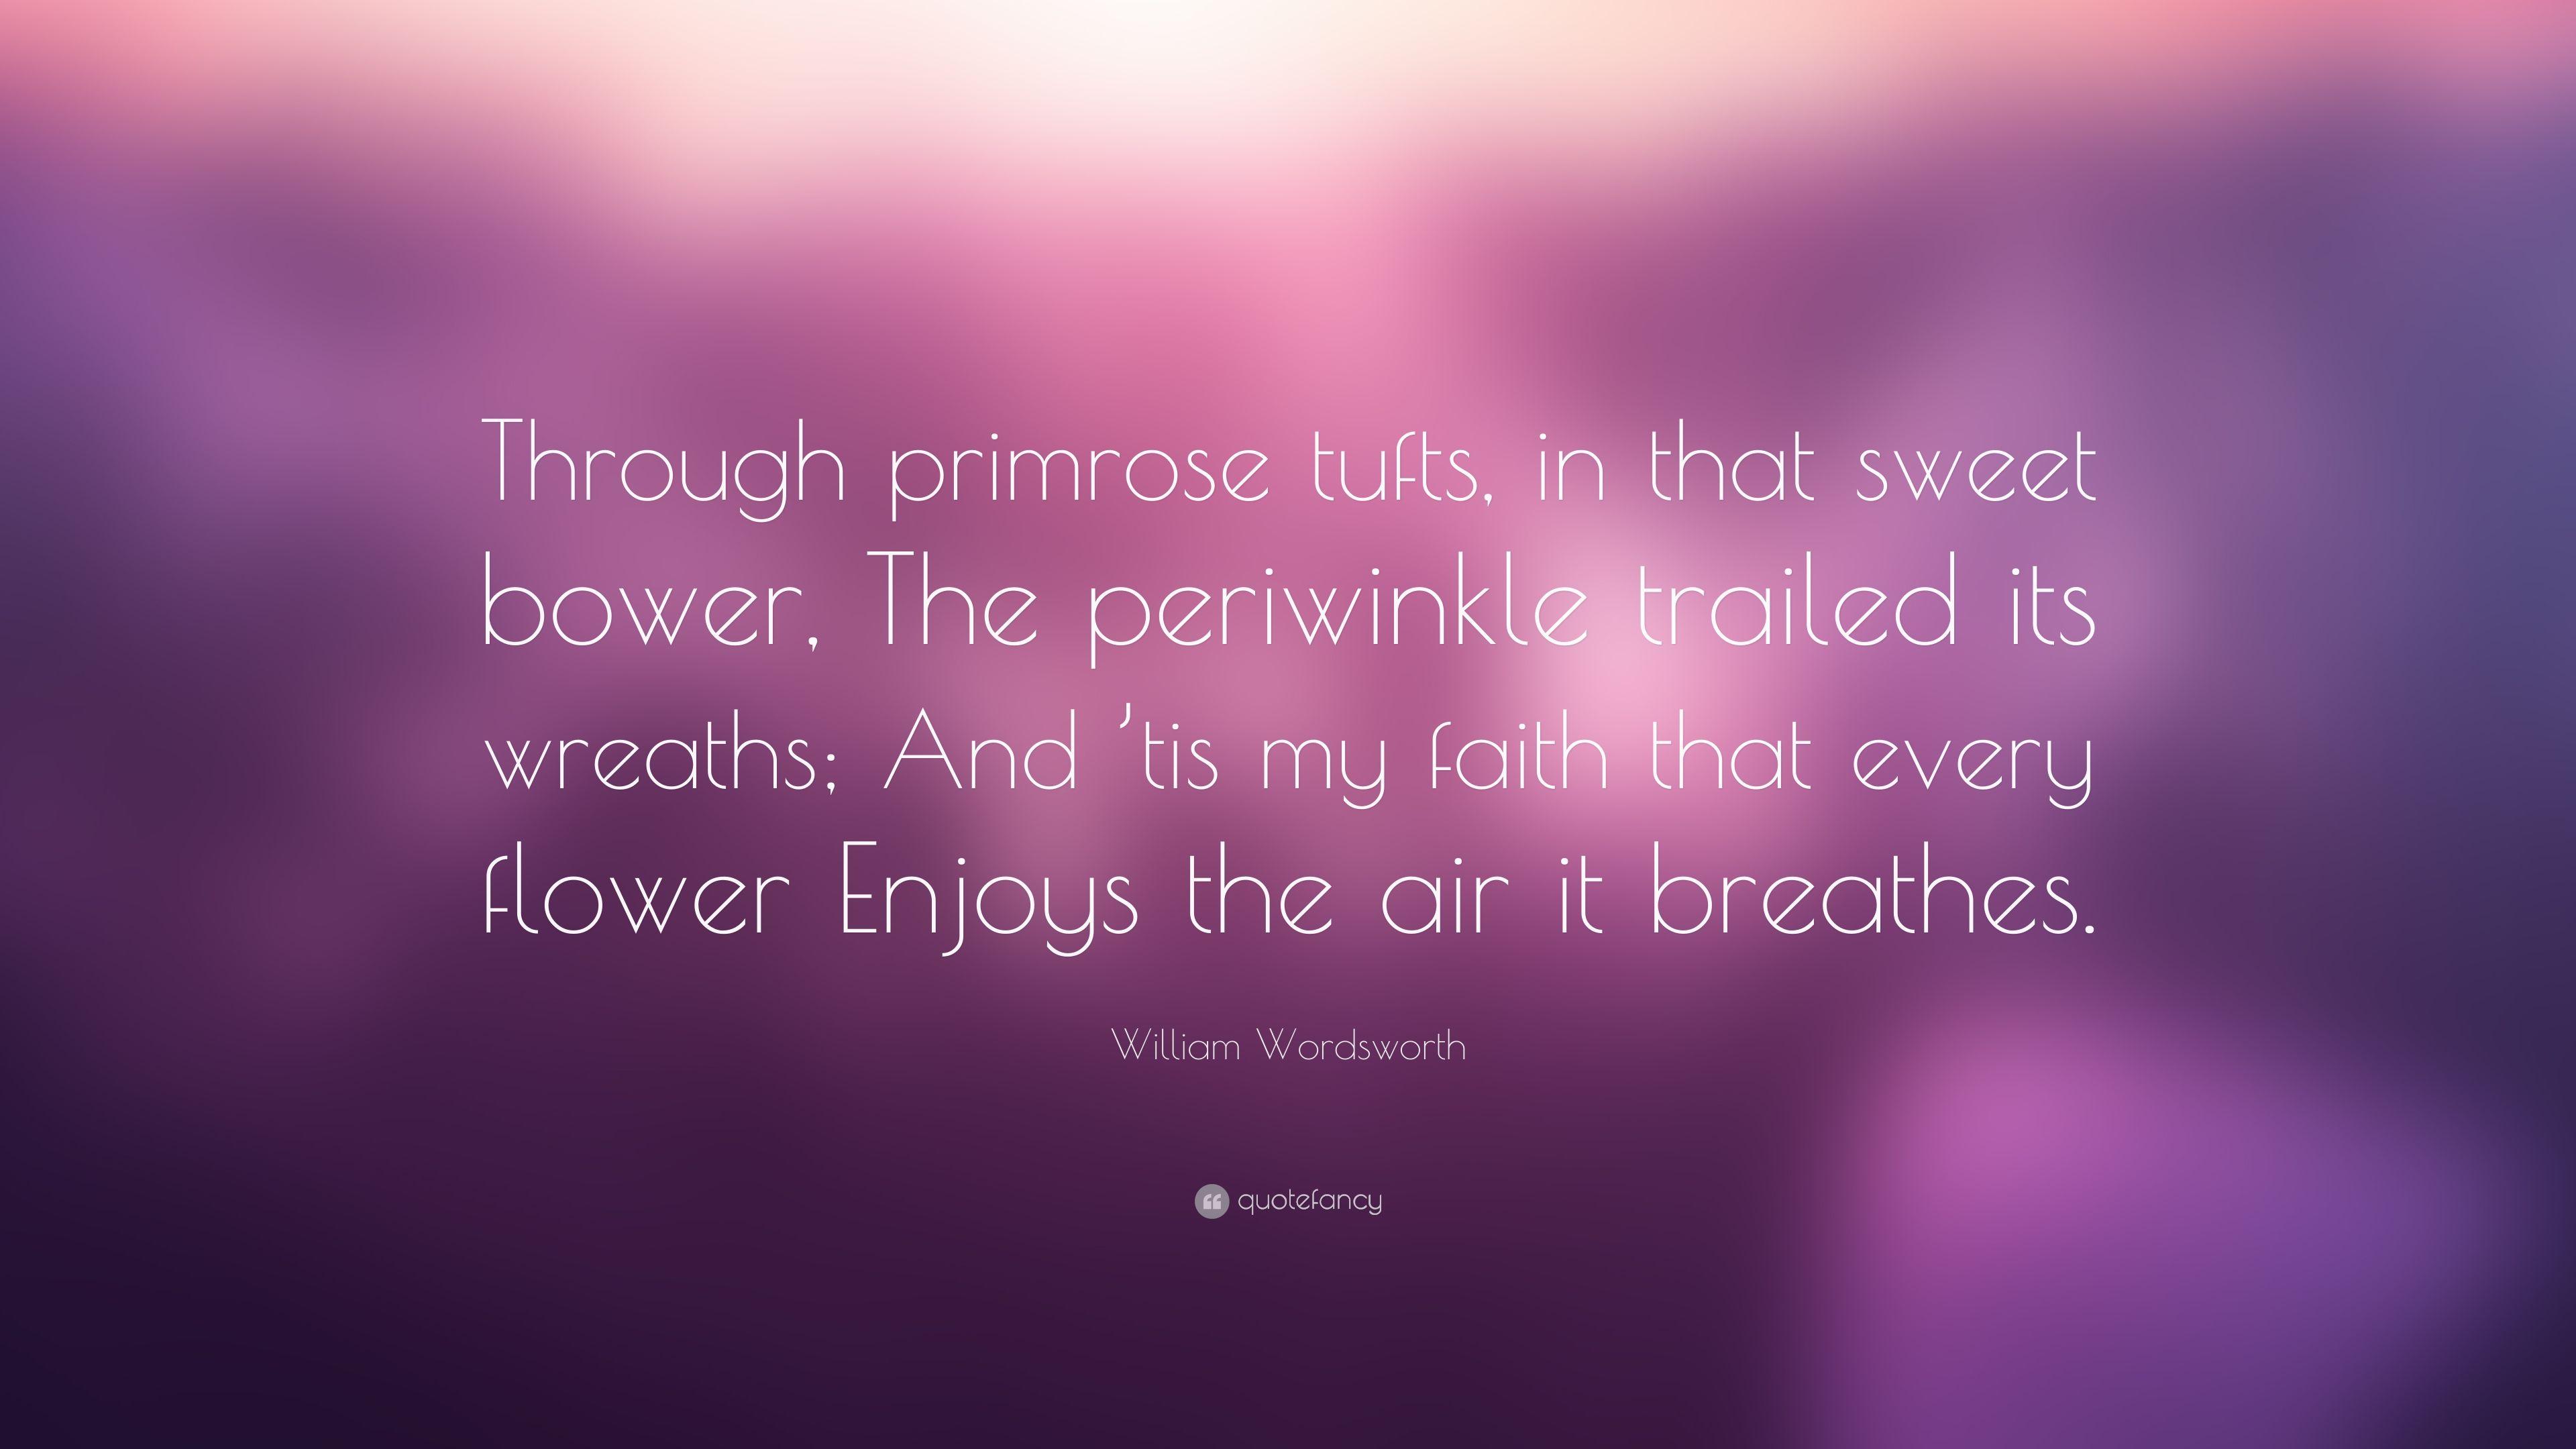 William Wordsworth Quote: “Through primrose tufts, in that sweet